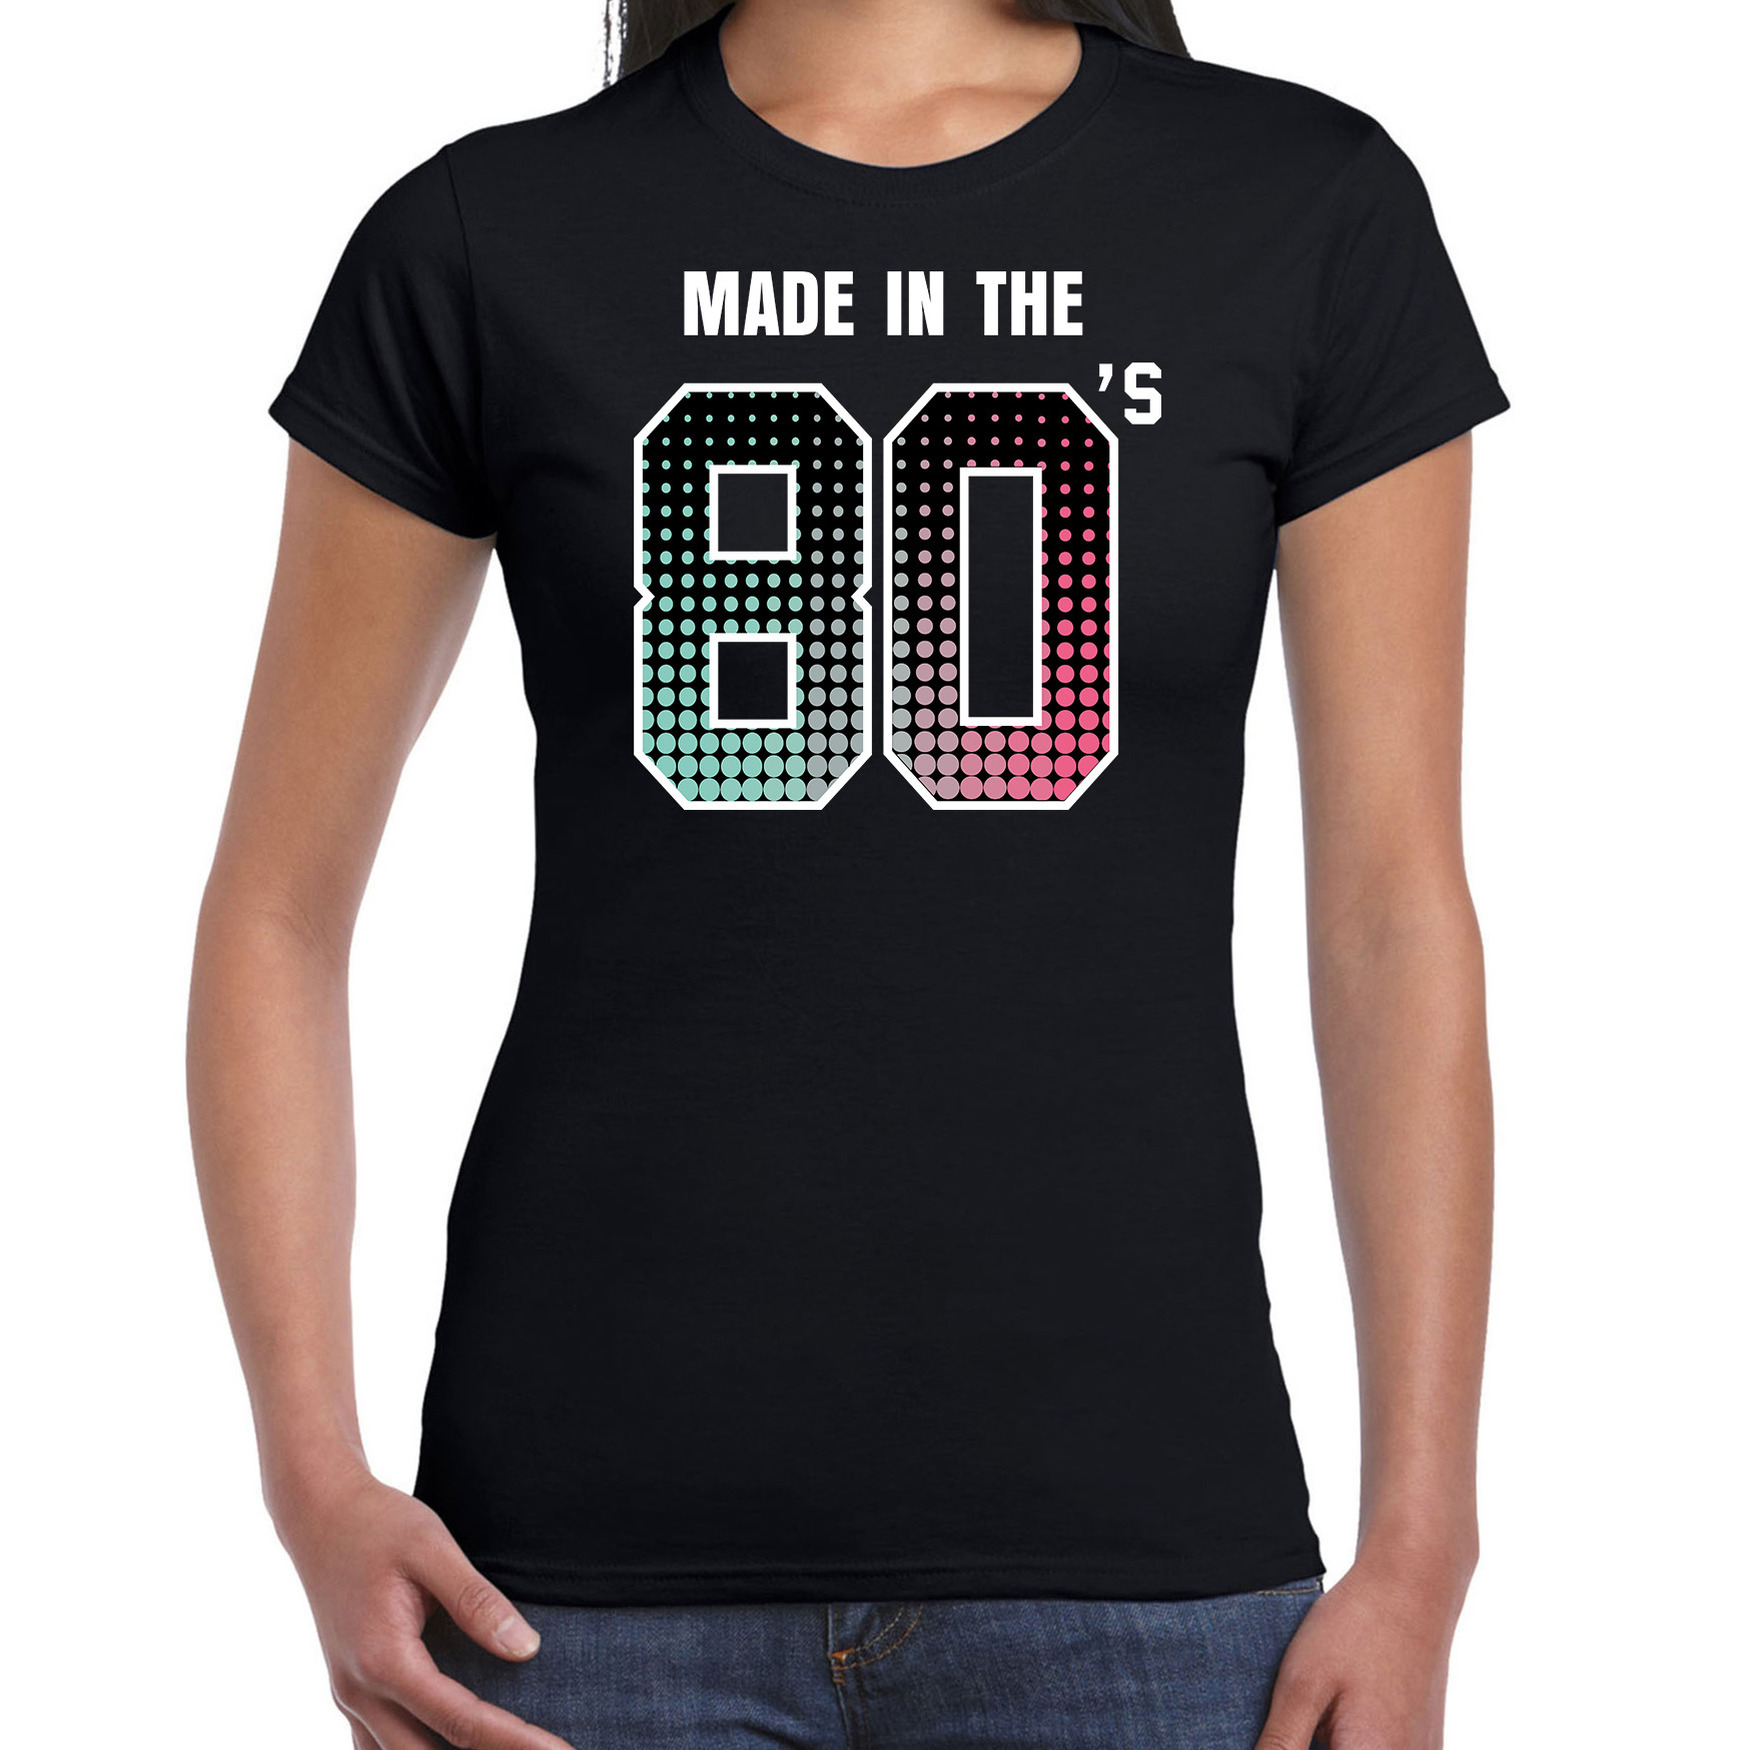 Eighties t-shirt / shirt made in the 80s / geboren in de jaren 80 zwart voor dames